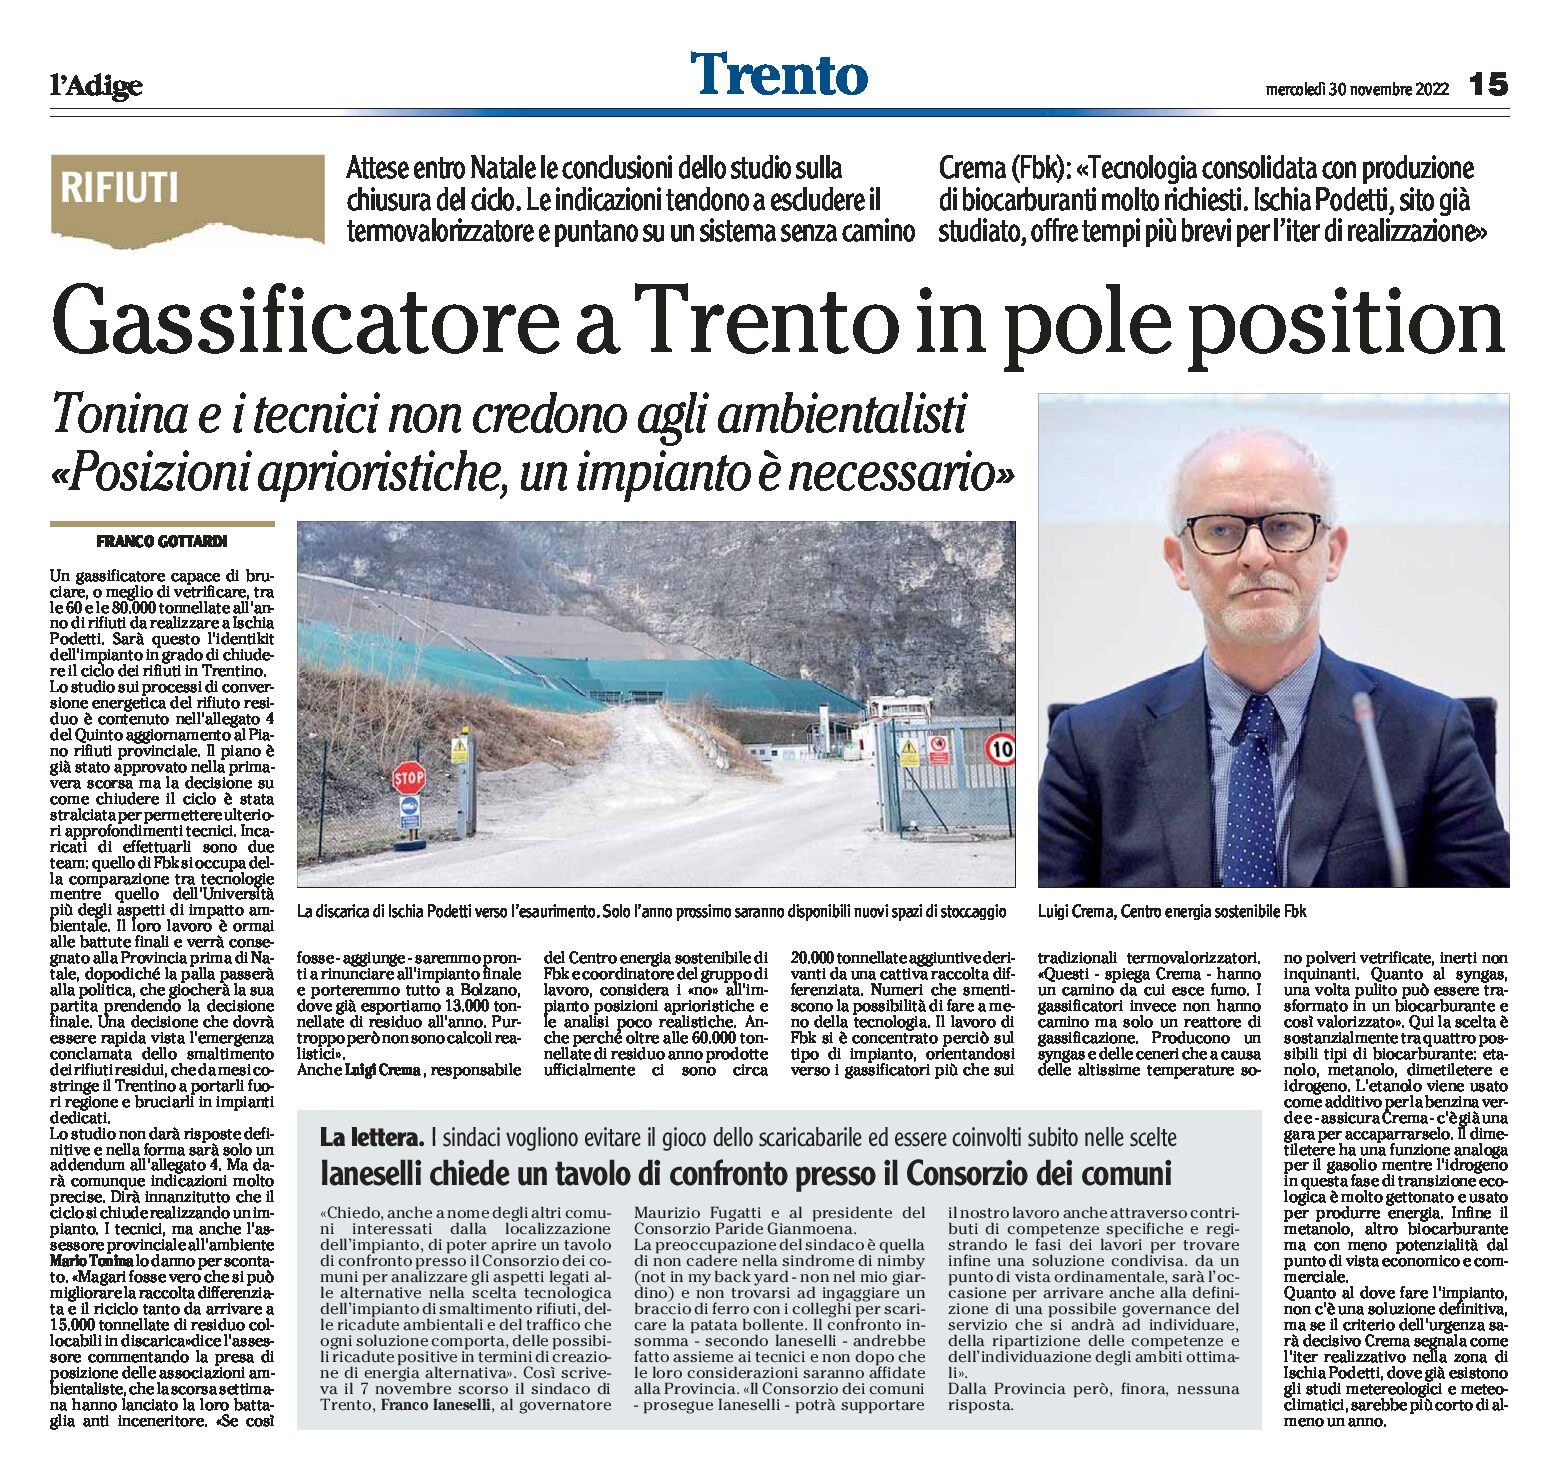 Rifiuti: gassificatore a Trento in pole position